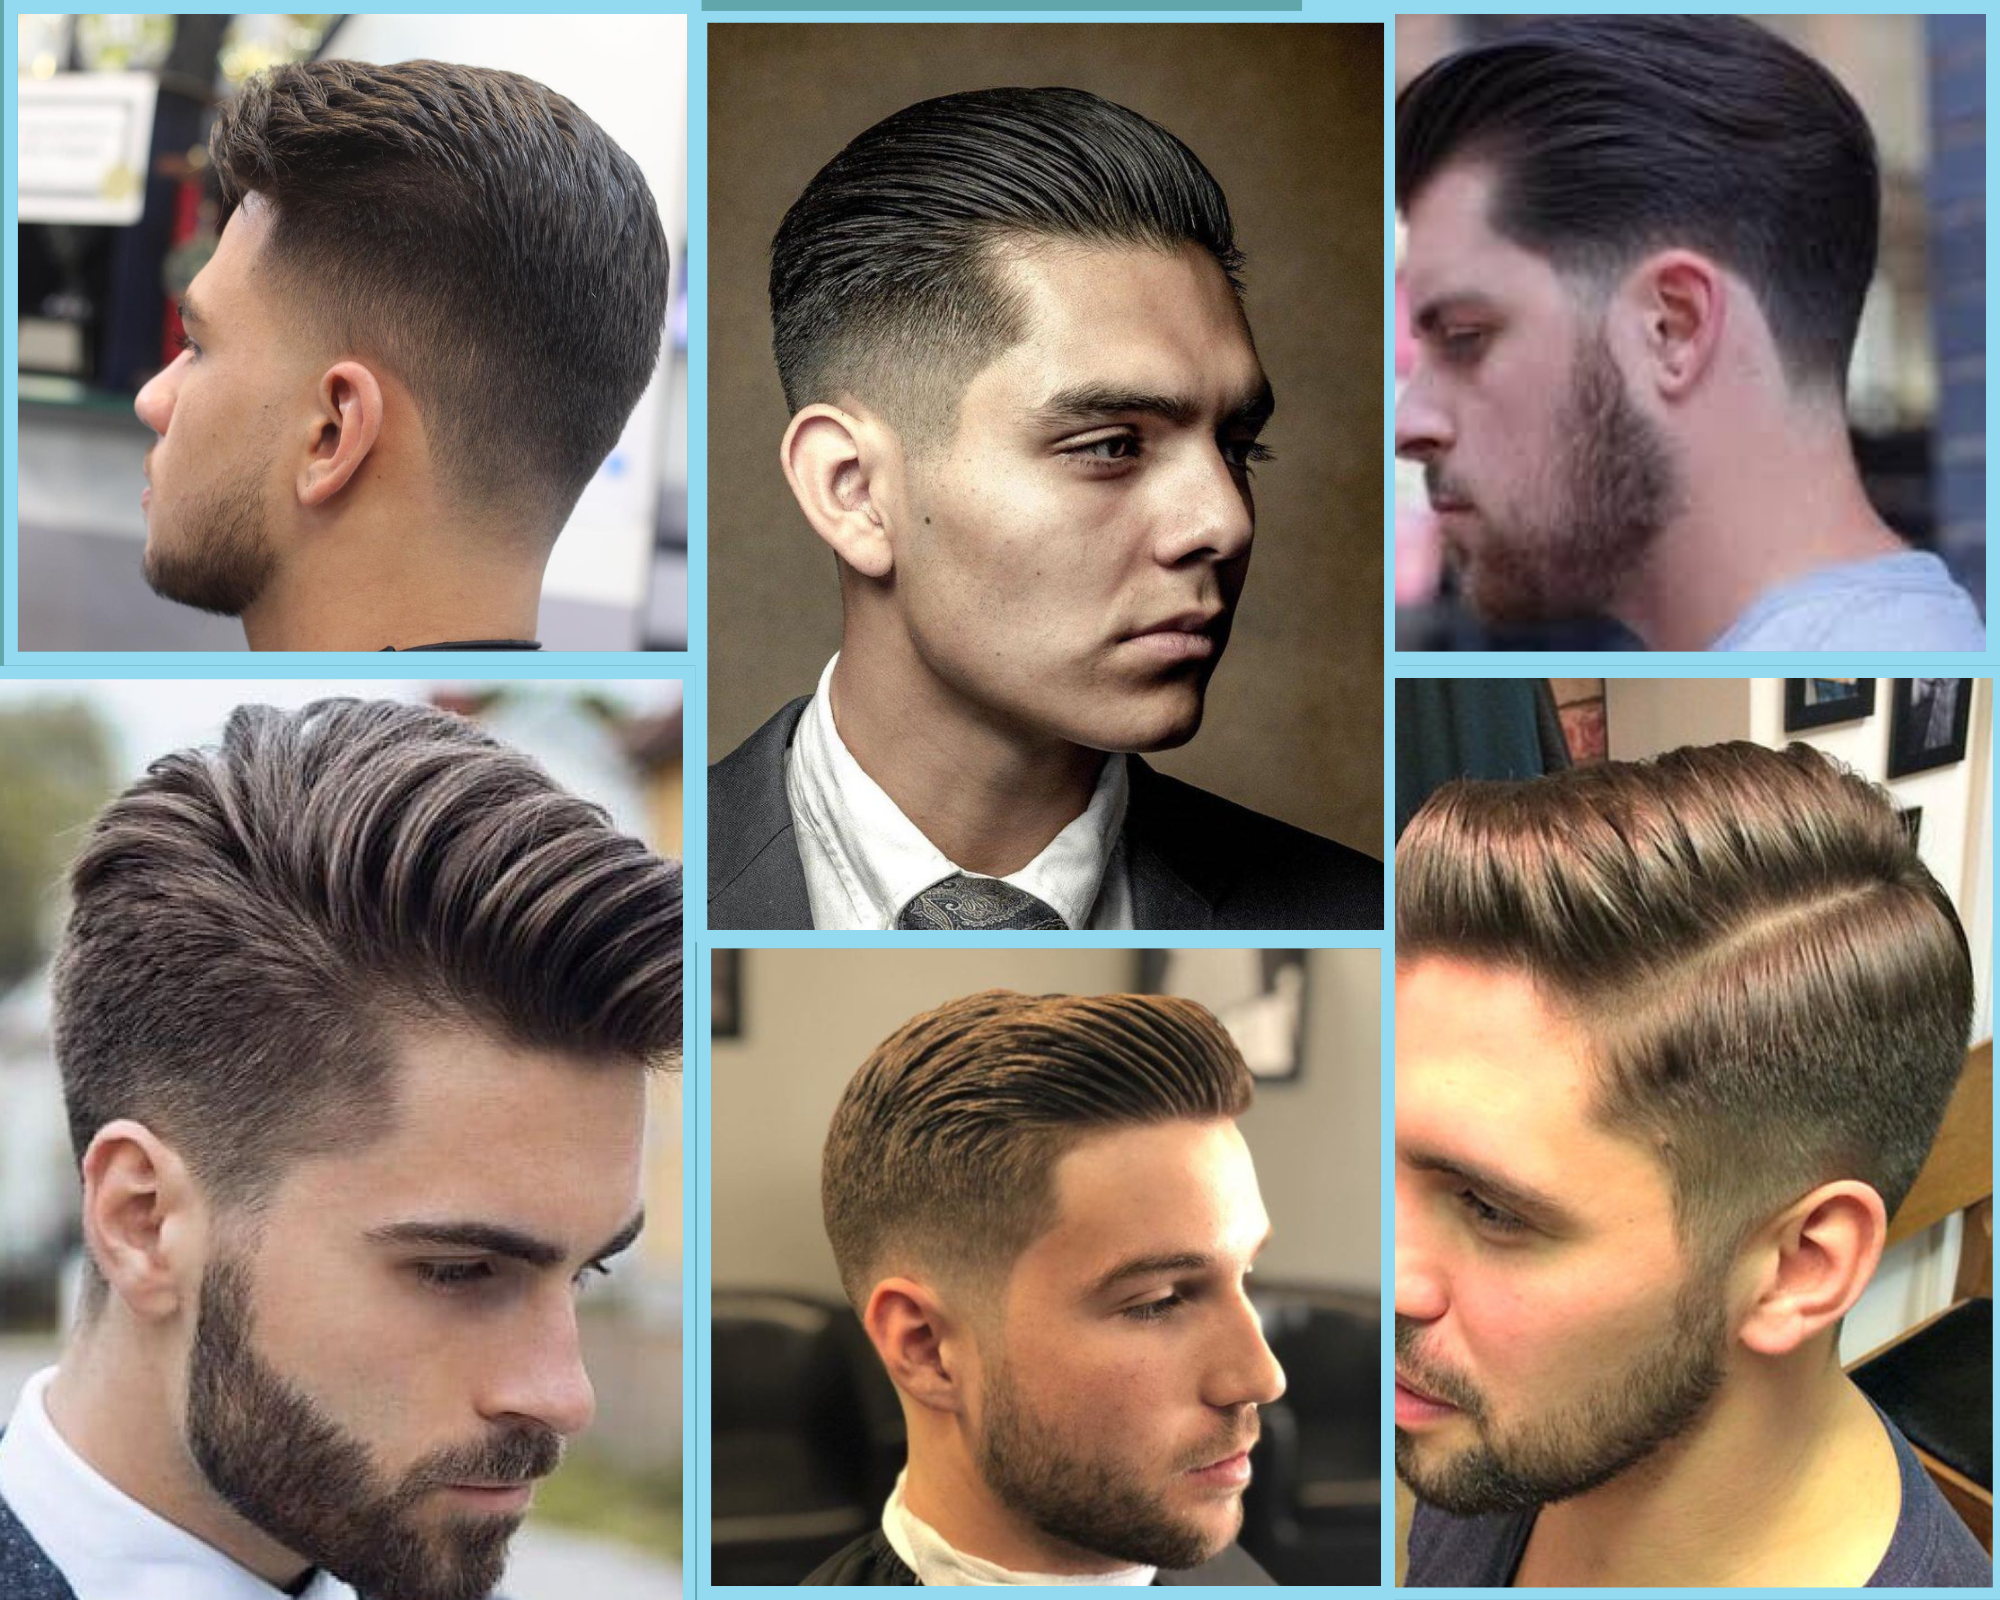 “El top 20 de cortes de cabello clásicos para hombres: ¿cuál es tu estilo?”